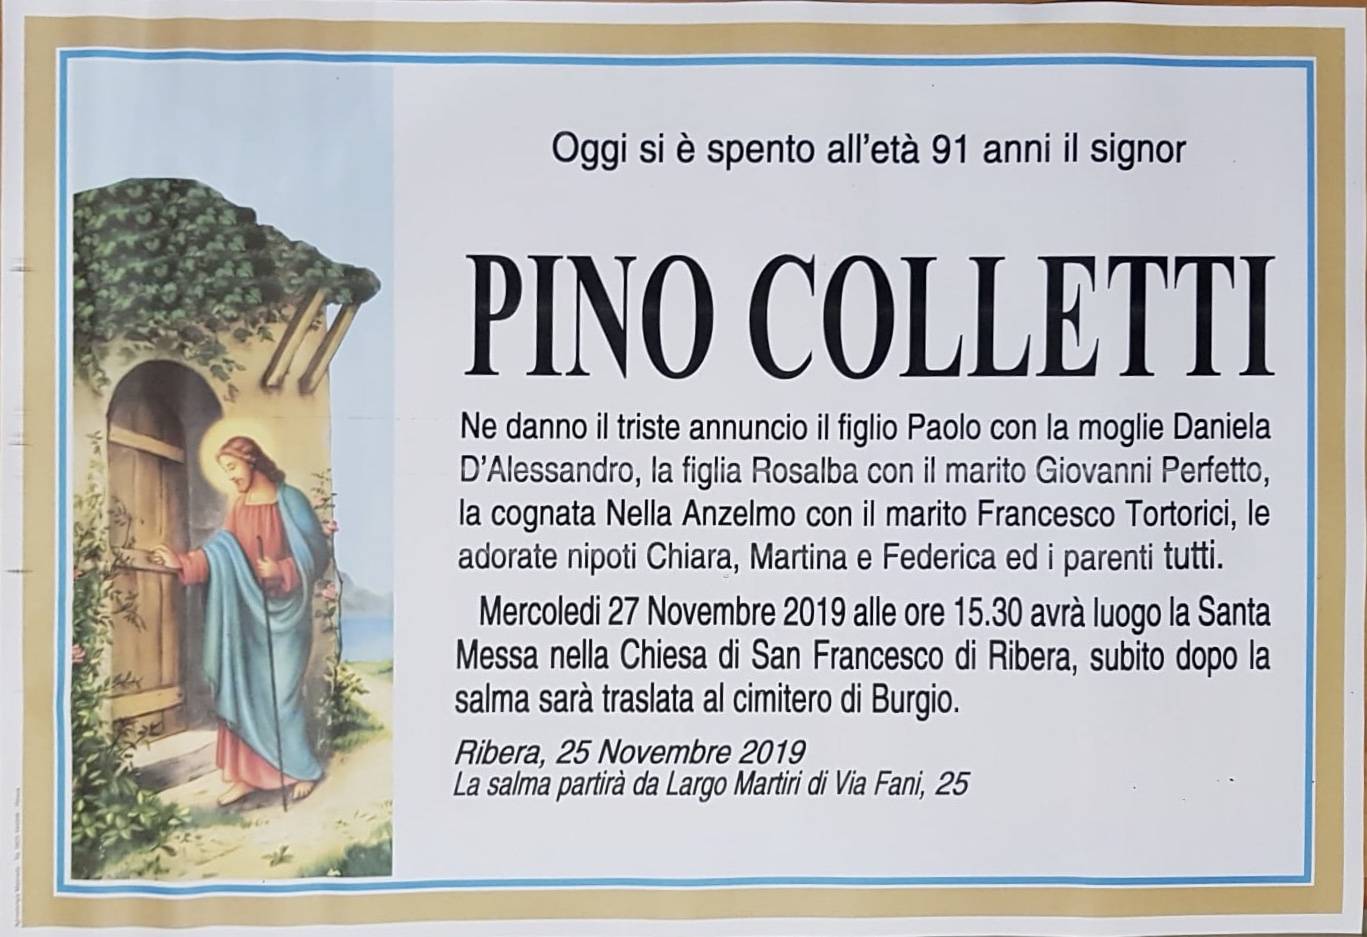 Pino Colletti